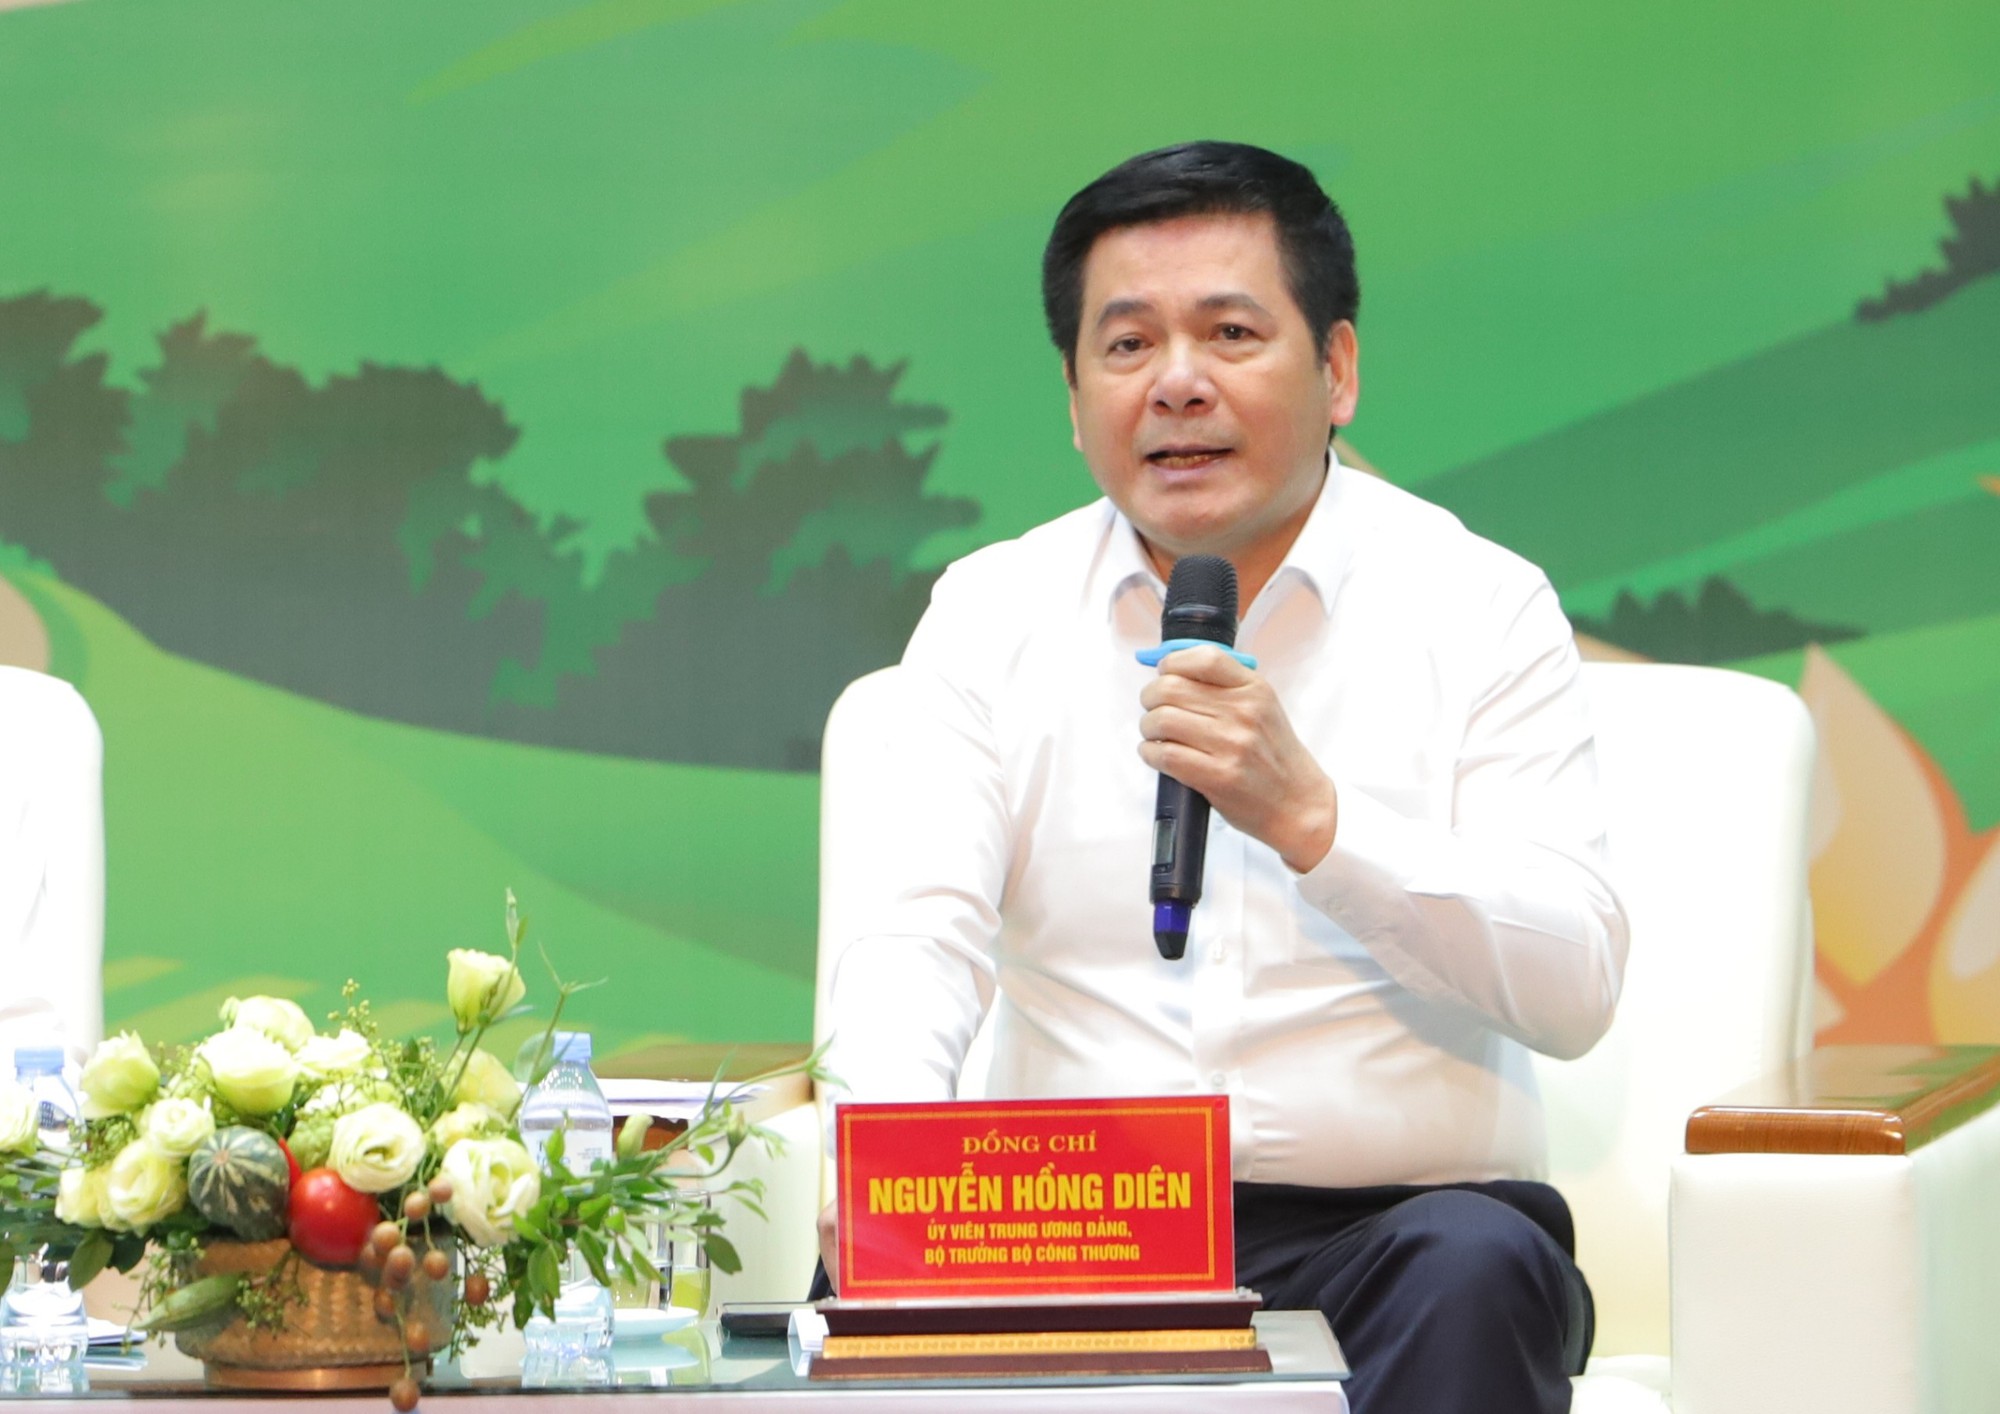 Bộ trưởng Bộ Công thương Nguyễn Hồng Diên: Thay đổi tư duy xuất khẩu nông sản sang Trung Quốc - Ảnh 3.